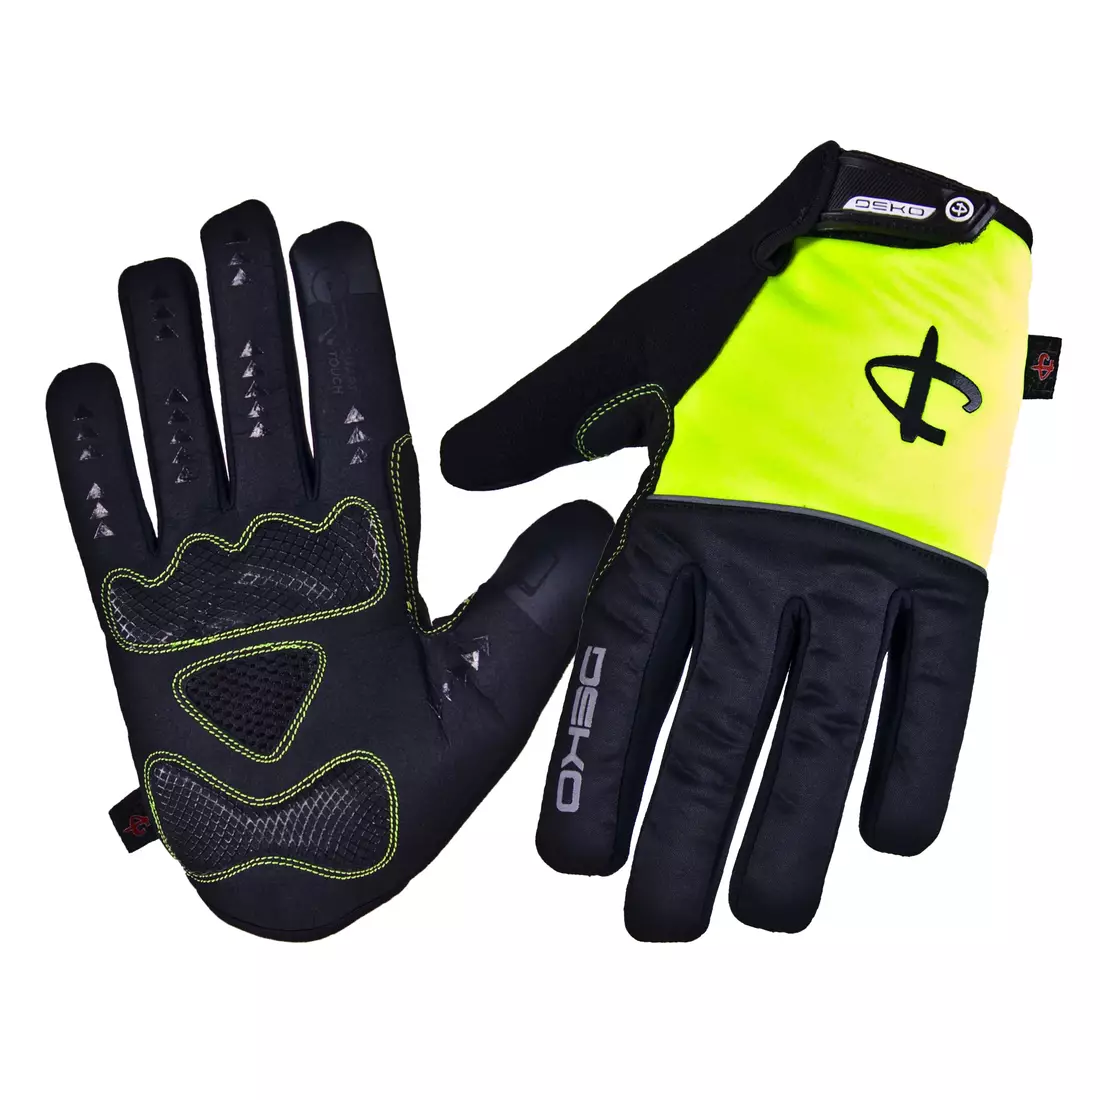 Zimní cyklistické rukavice DEKO ROST černo-fluor žluté DKWG-0715-006A